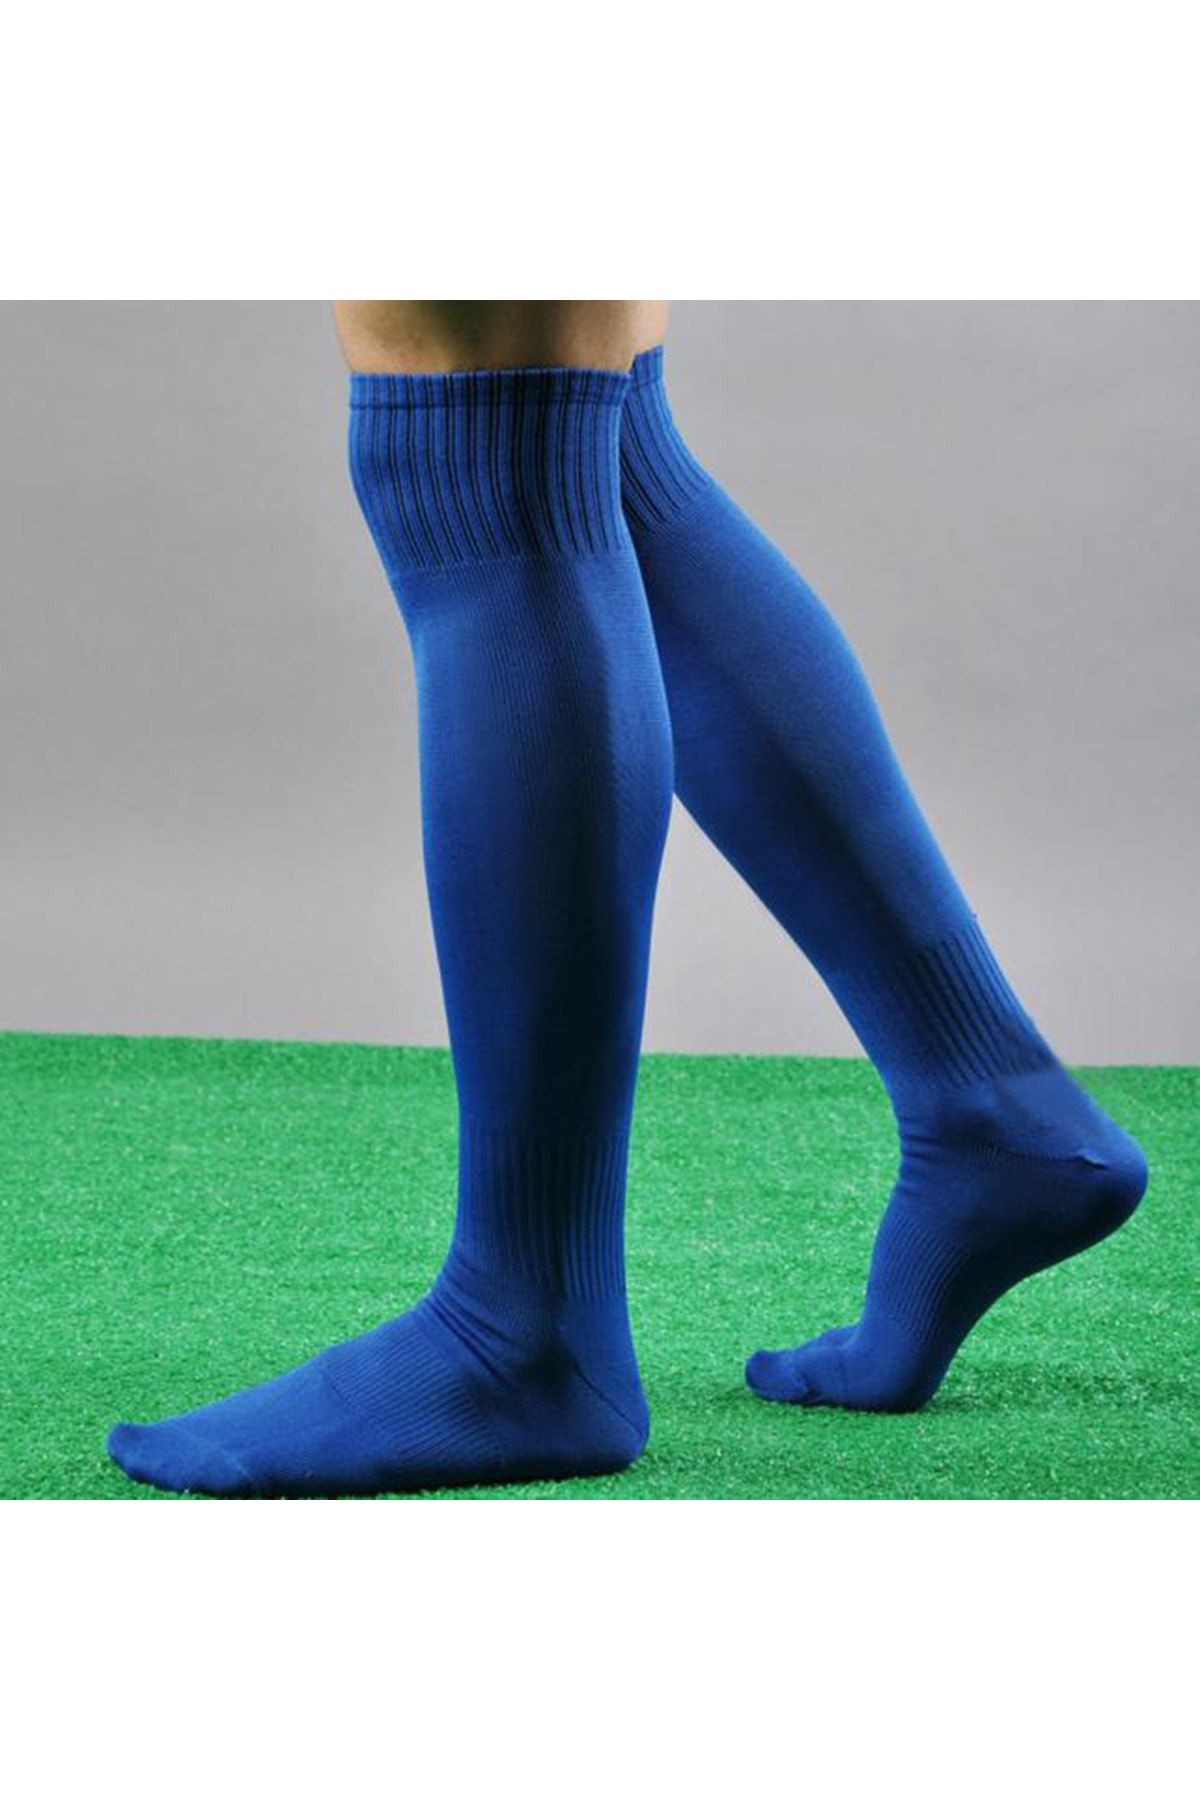 GAZELMANYA Yetişkin Futbol Maç Çorabı 40-45 Futbol Tozluk Futbol Halısaha Çorabı Konç Halı Saha Çorap